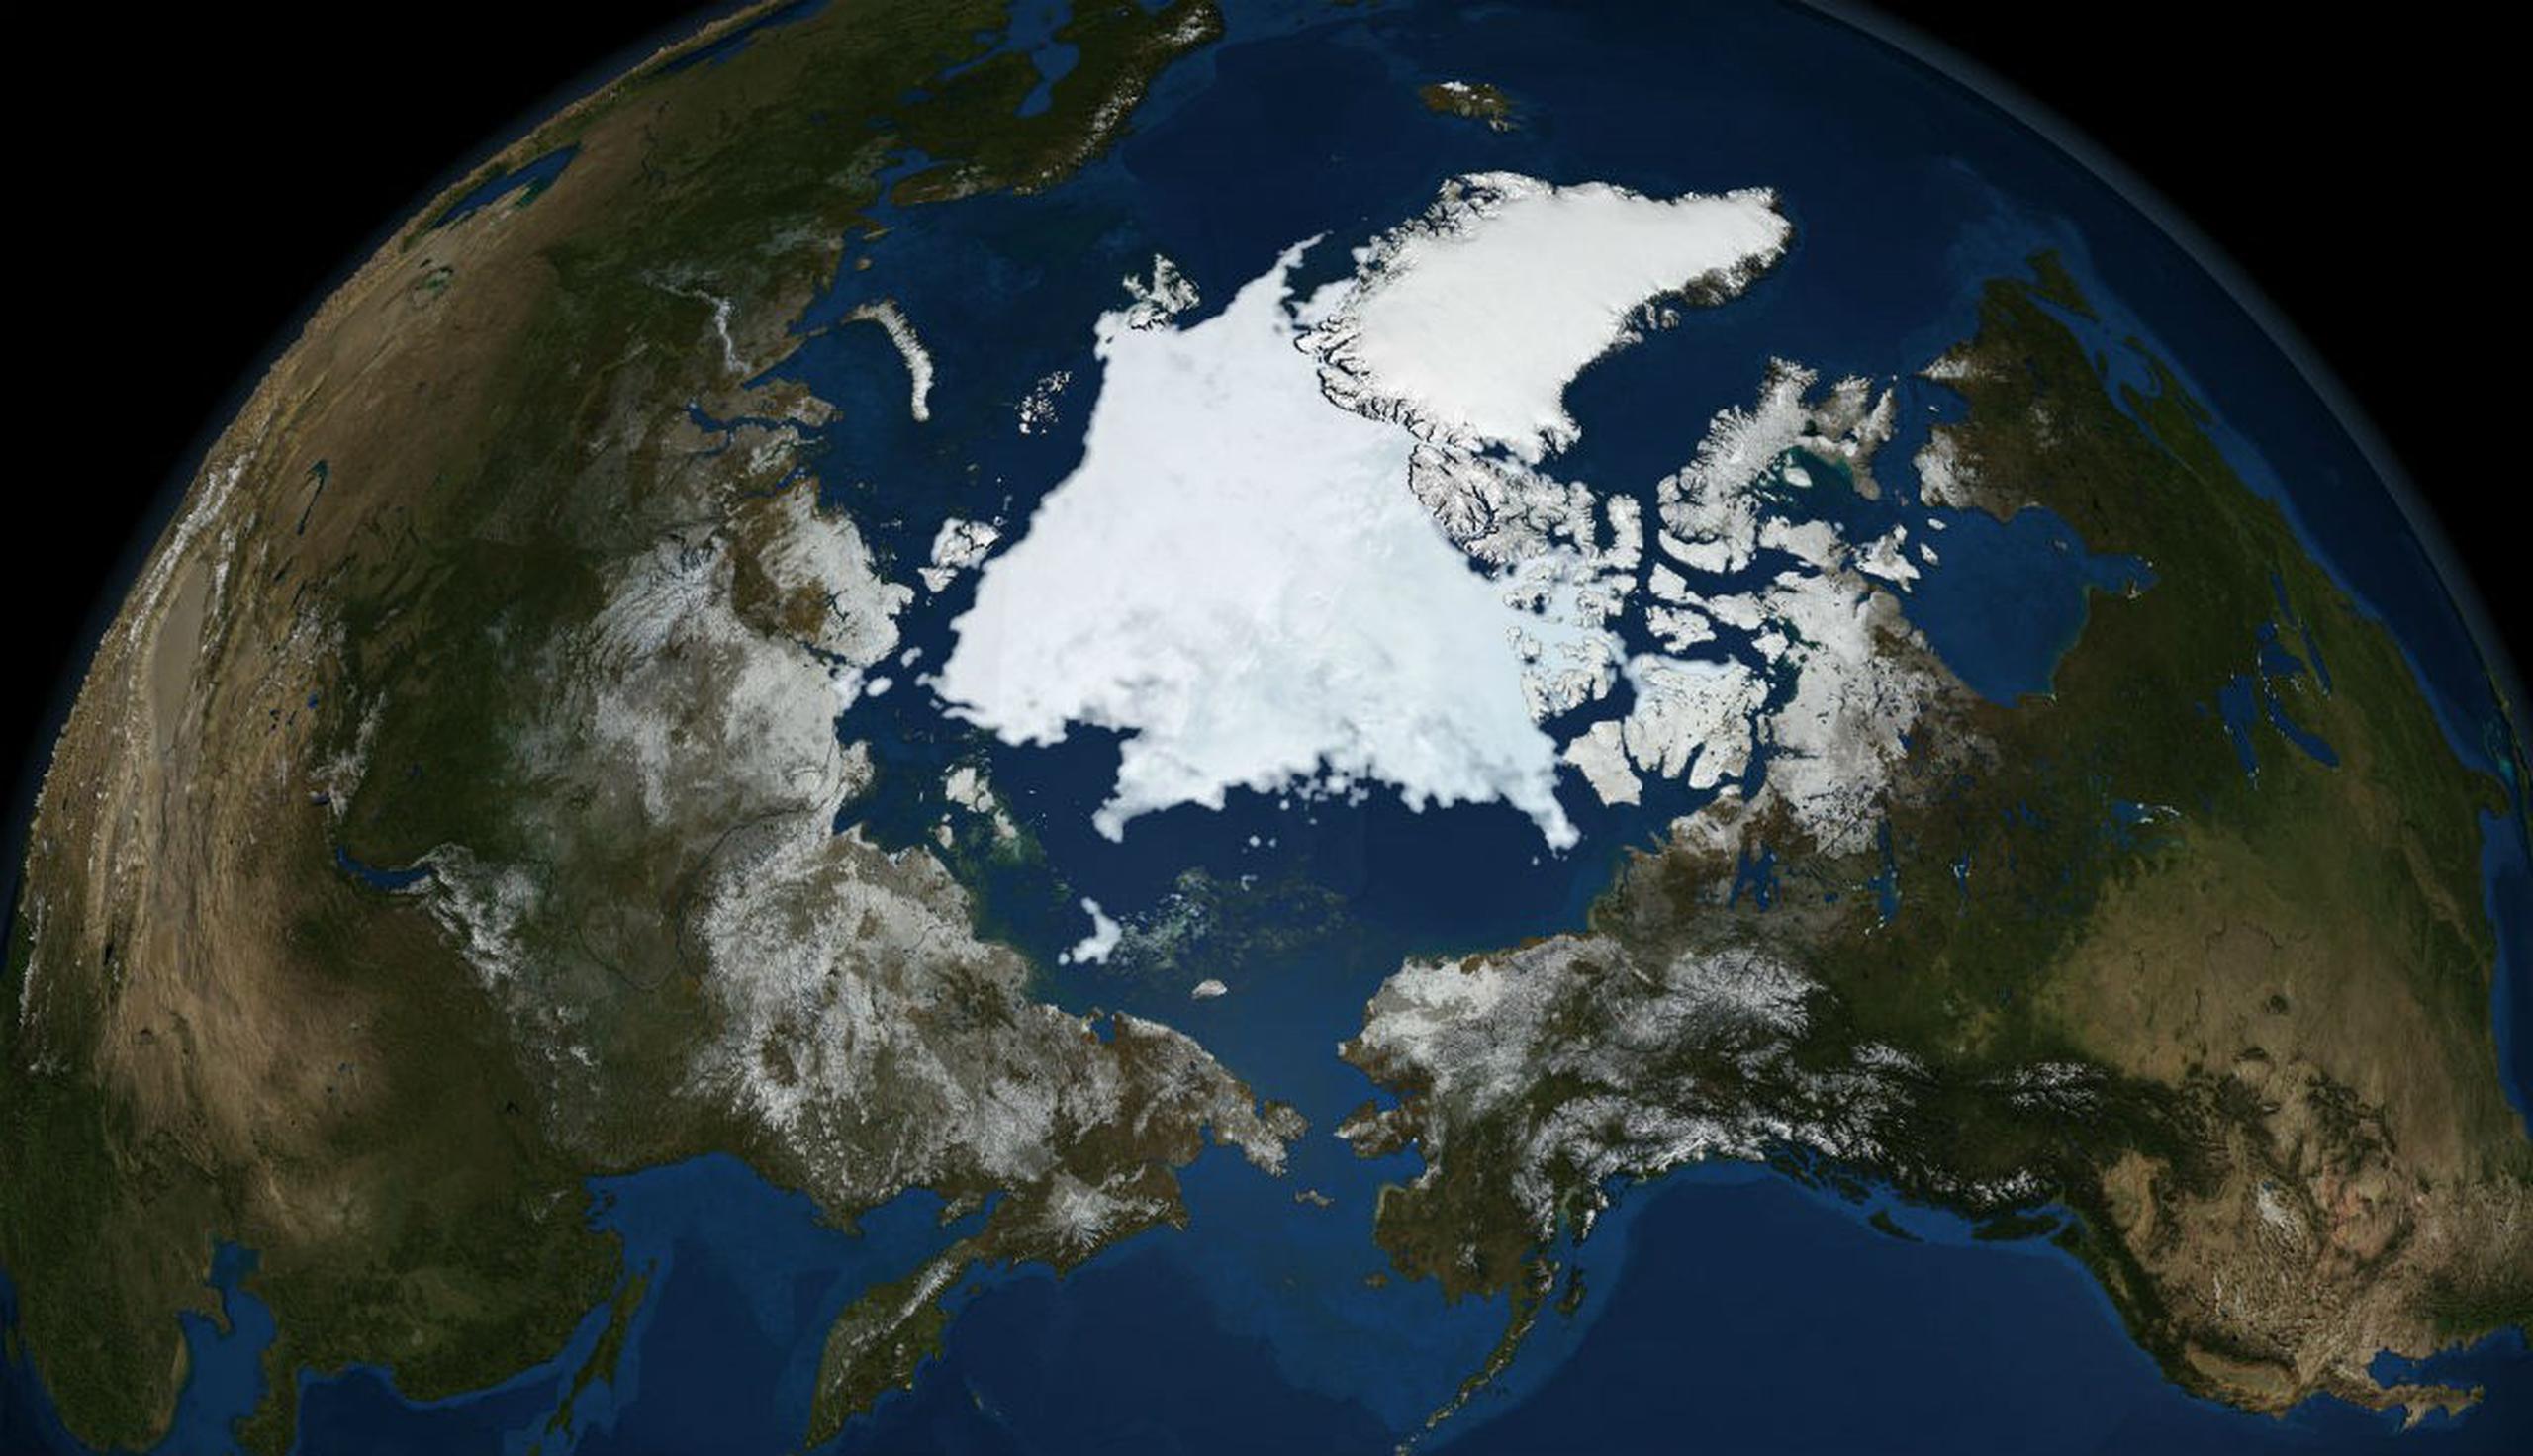 El deshielo acelerado en las latitudes árticas y los glaciares en Groenlandia conlleva a riesgos que no han sido valorados del todo. (EFE)